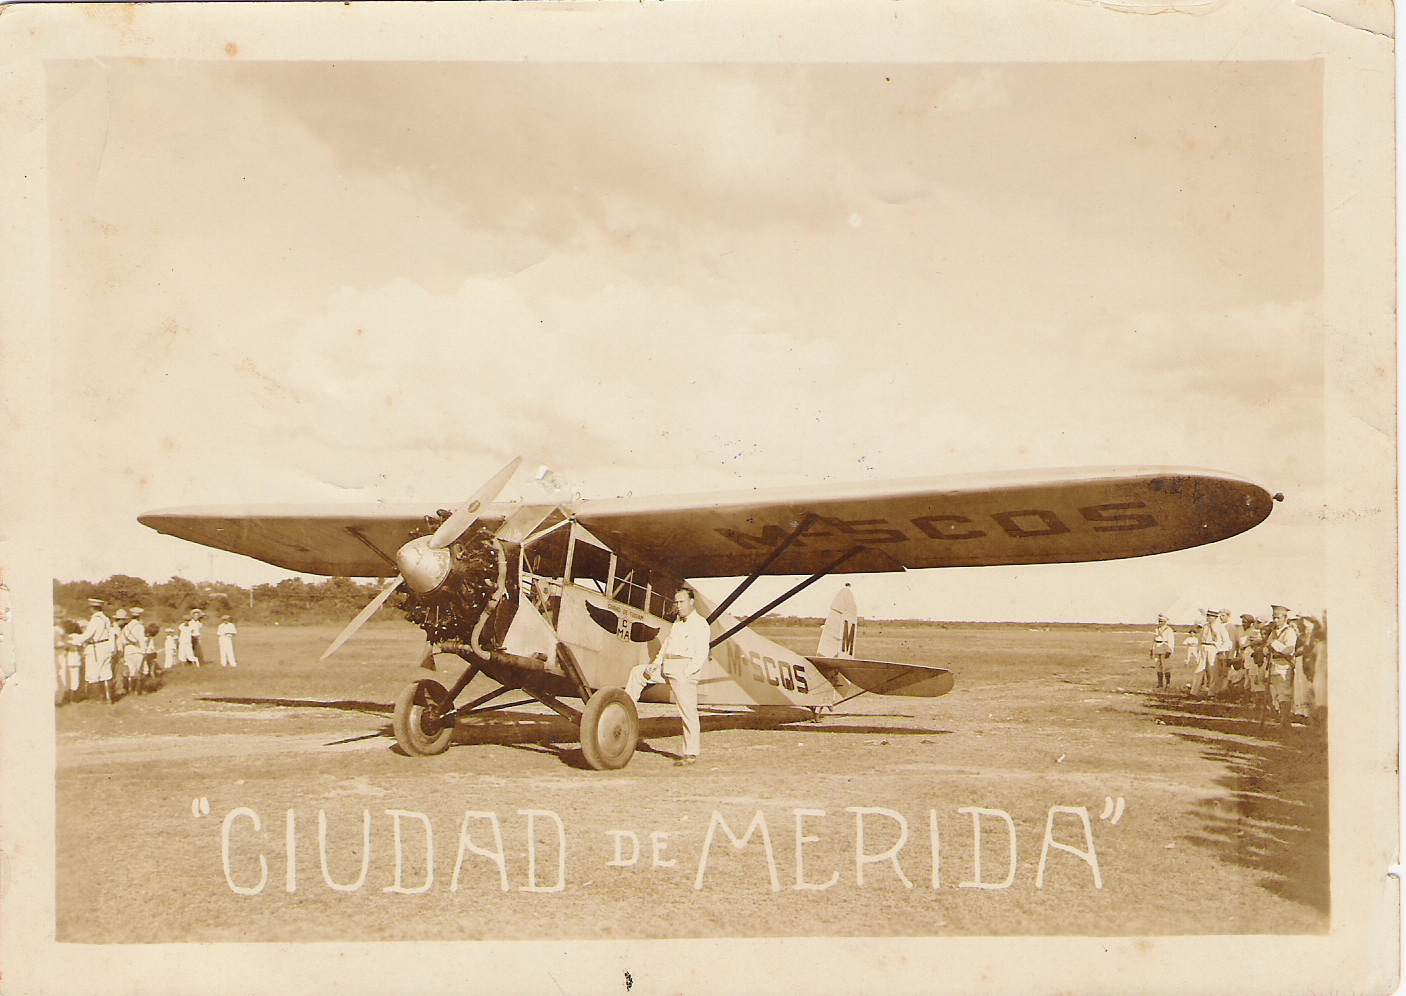 8. Avión Fairchild Ciudad de Mérida y el piloto americano B